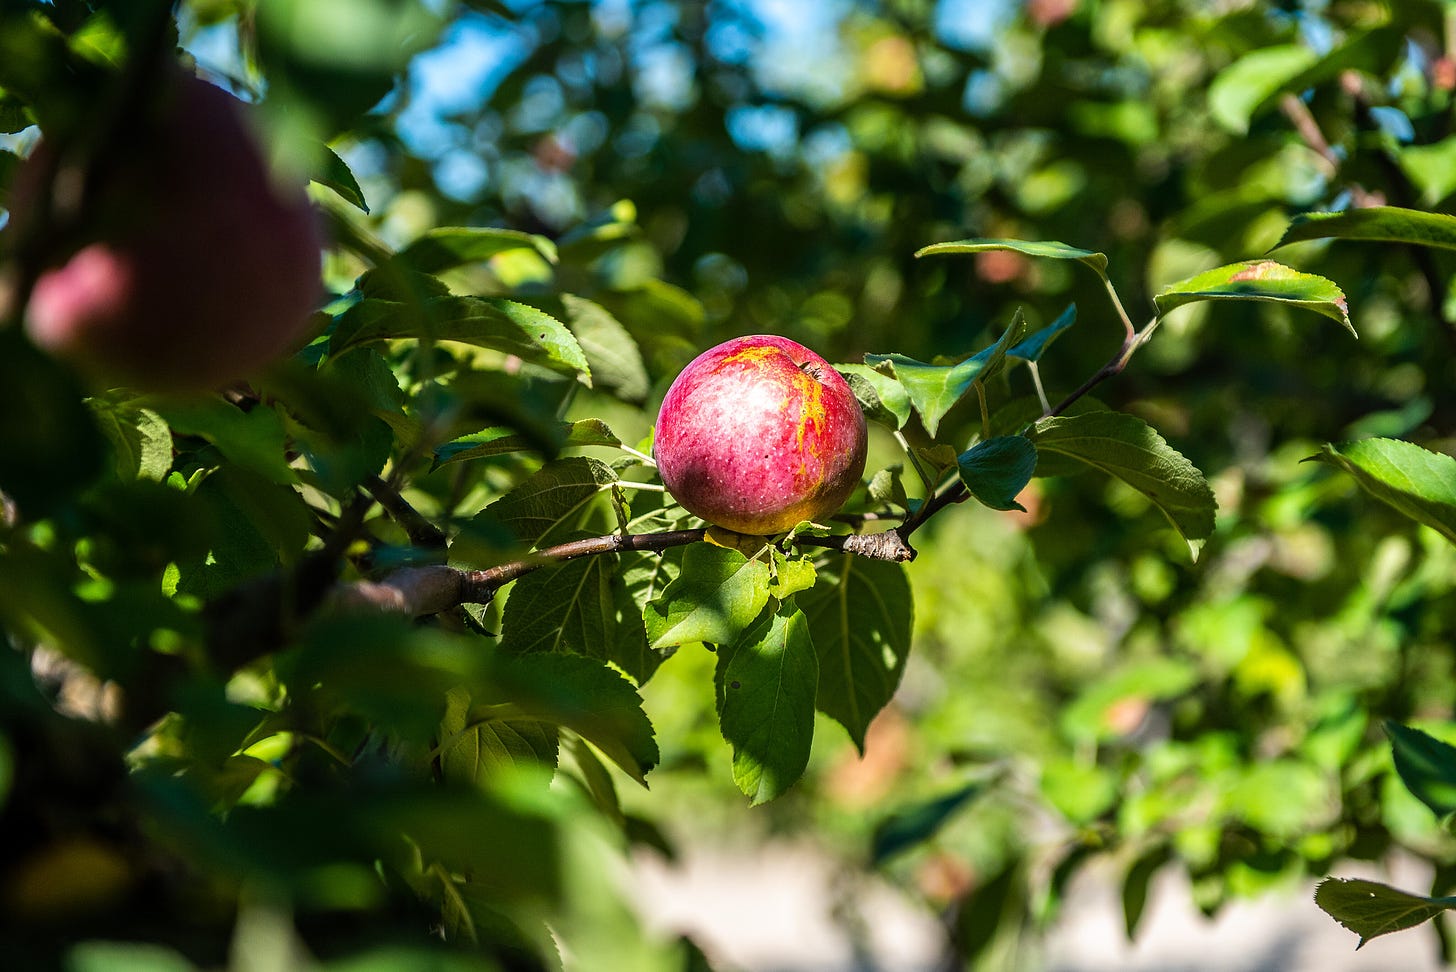 Image description: an apple on an apple tree branch. End image description.